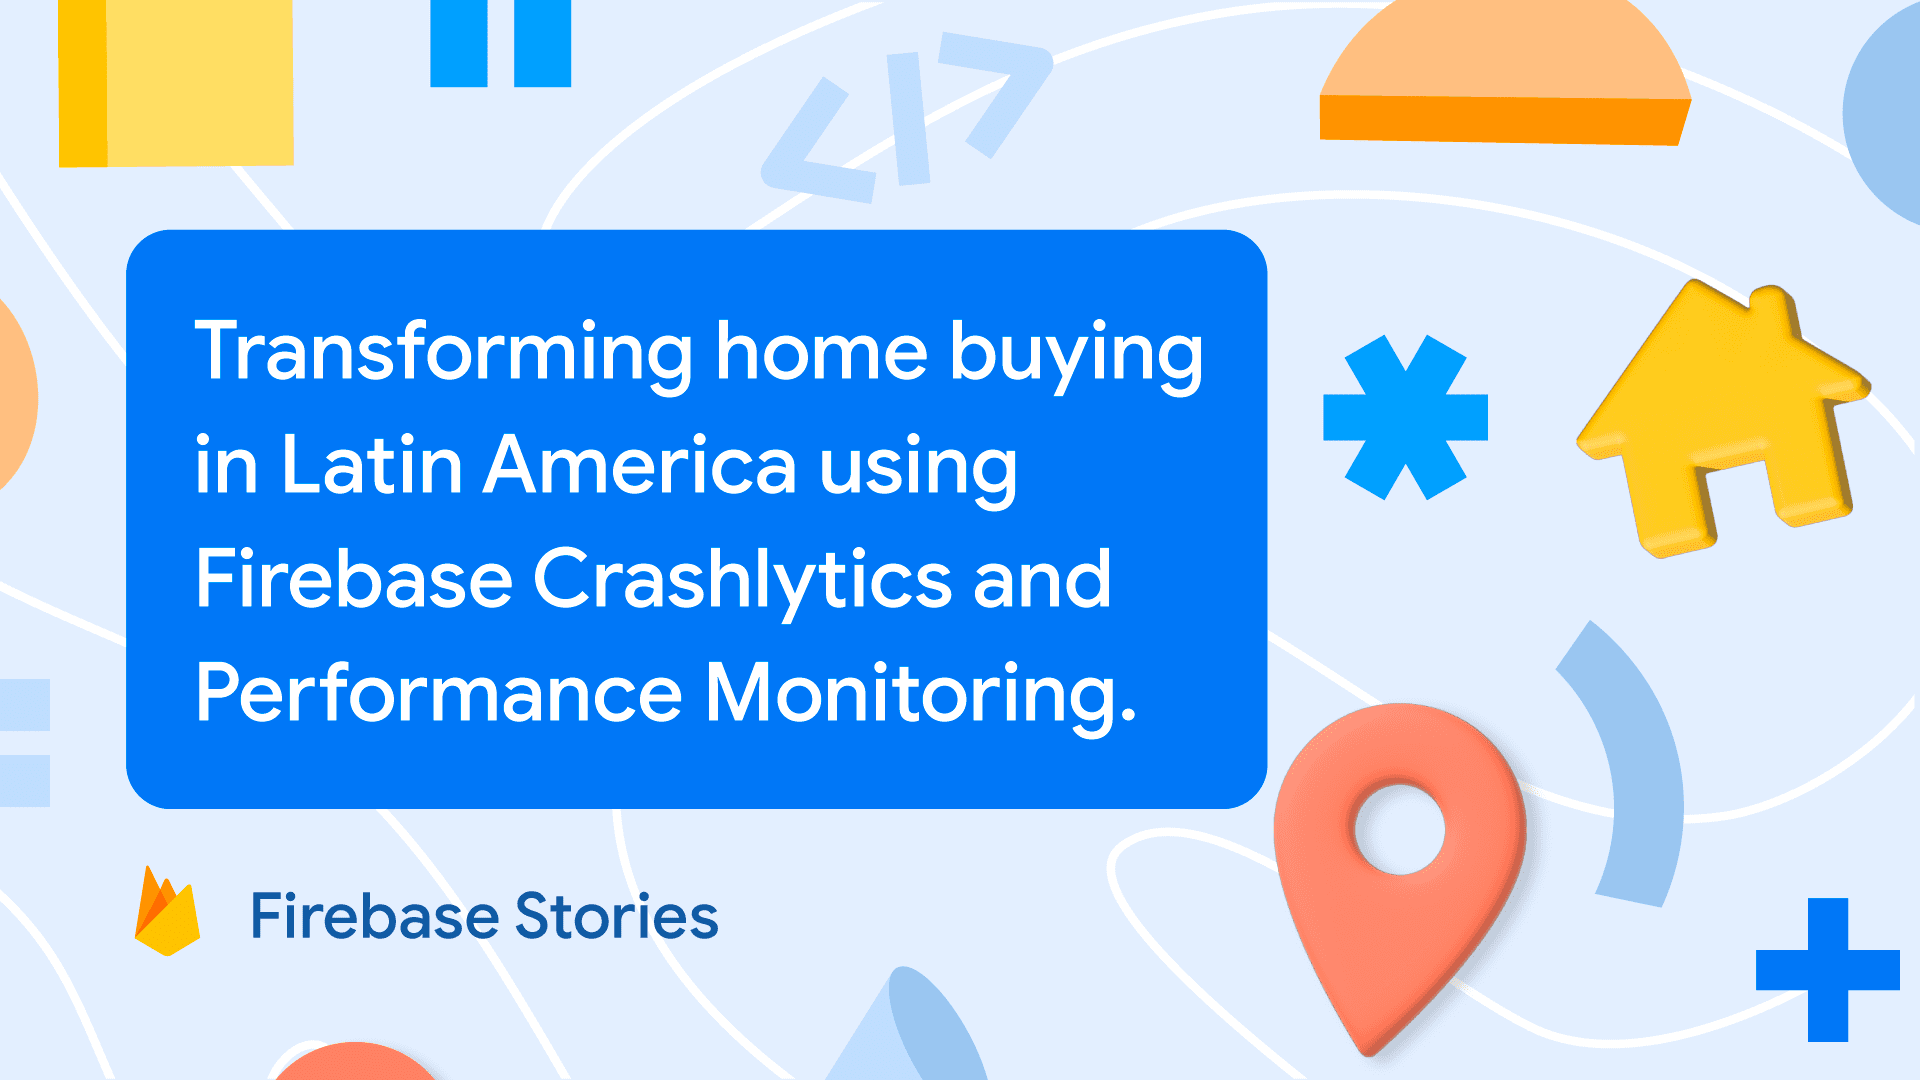 LaHaus: Transforming home buying in Latin America using Firebase Crashlytics and Performance Monitoring
